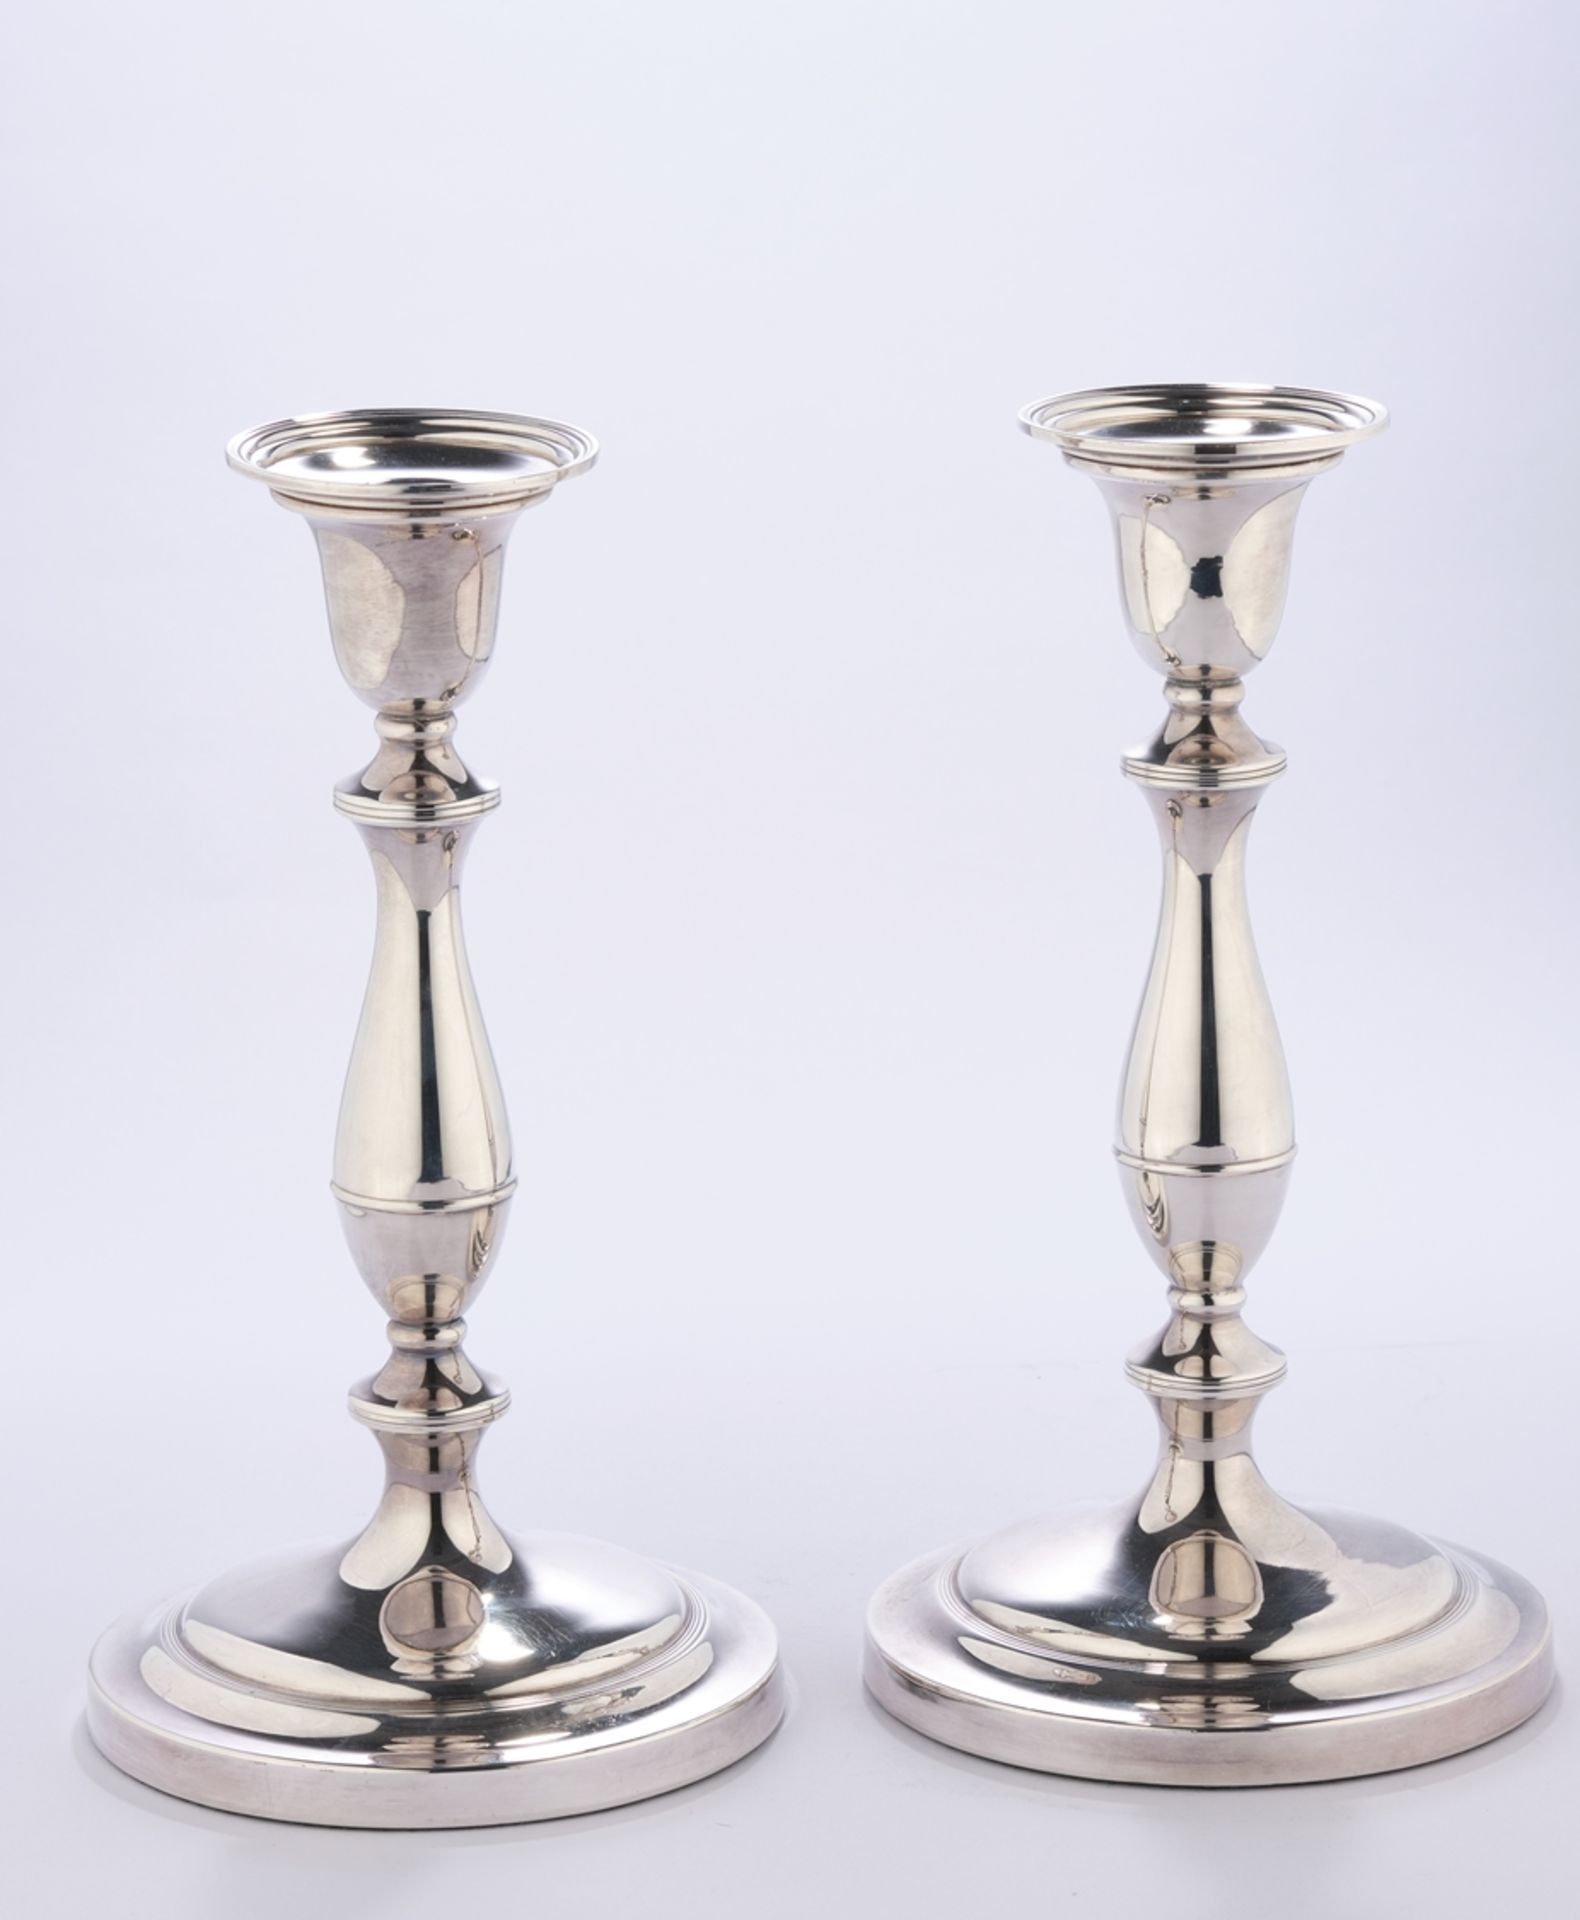 Paar Kerzenleuchter, Silber 925, London, 1935, Meistermarke CSF, glockenförmige Tülle mit Tropfeins